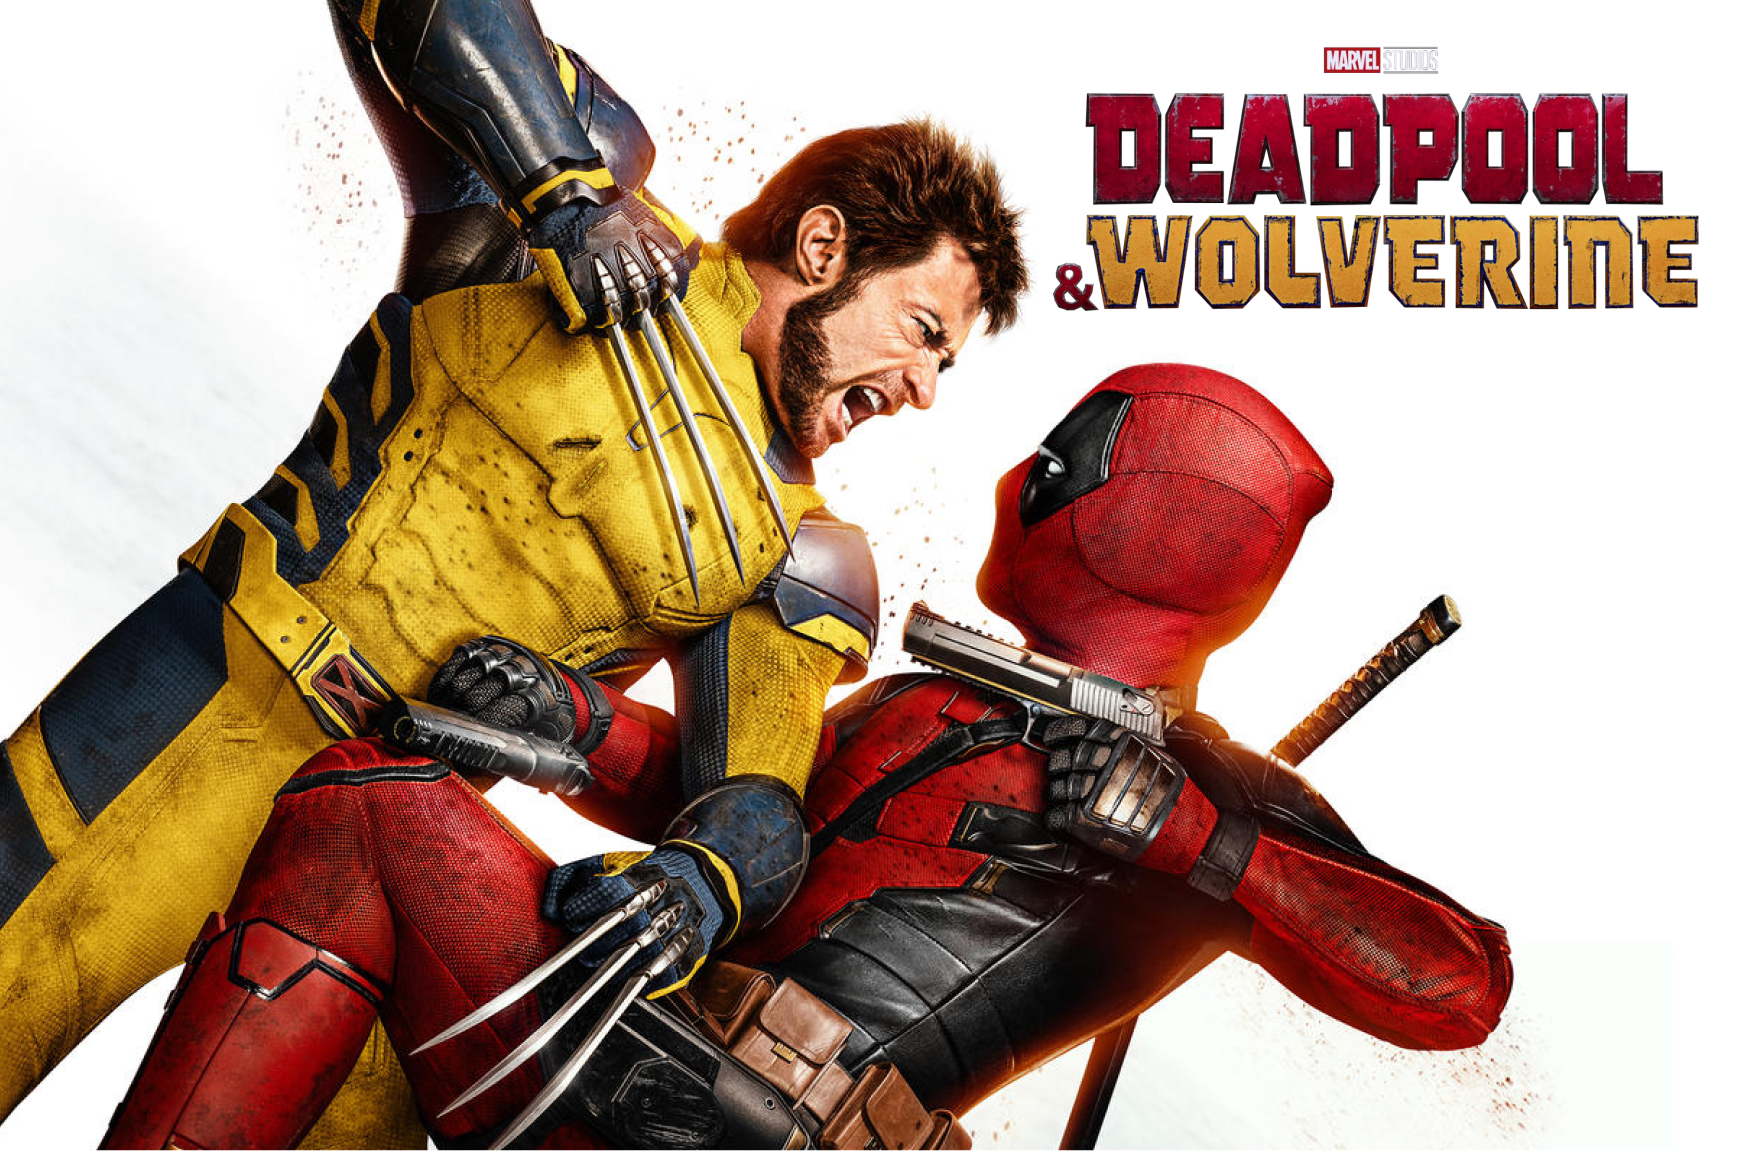 فیلم و سریال - فیلم نت نیوز- ددپول و ولورین - Deadpool & Wolverine